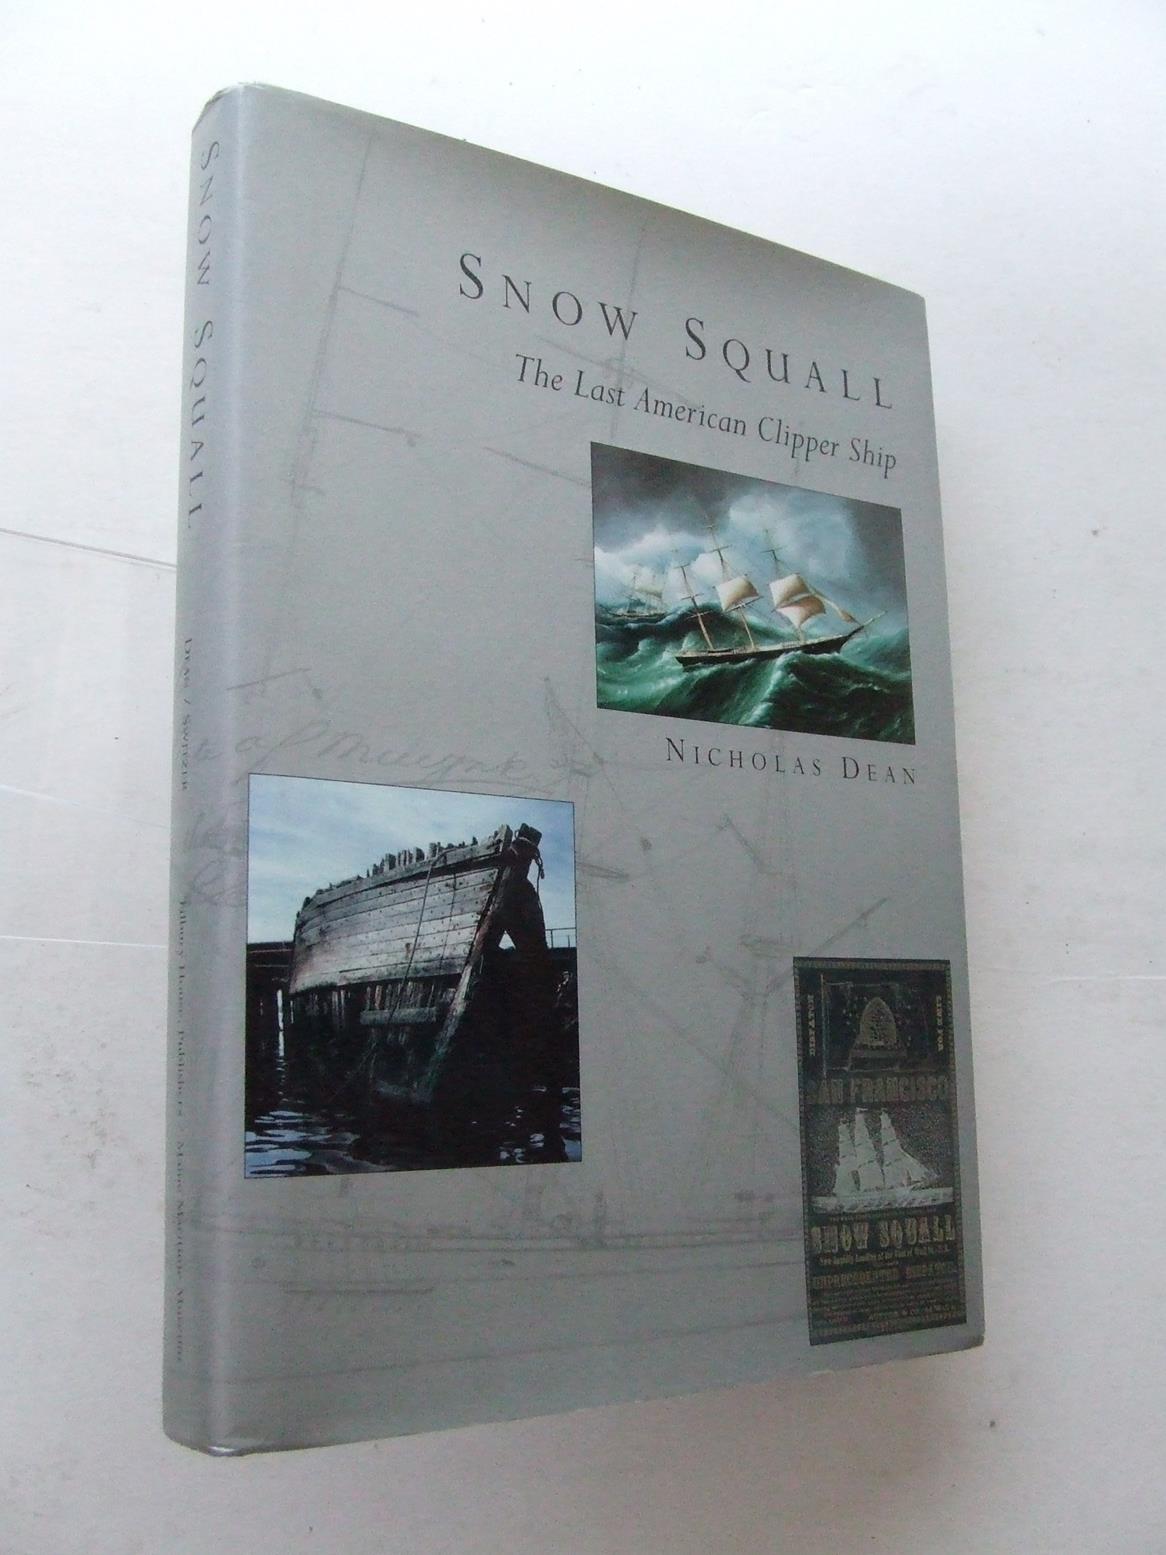 Snow Squall, the last American clipper ship